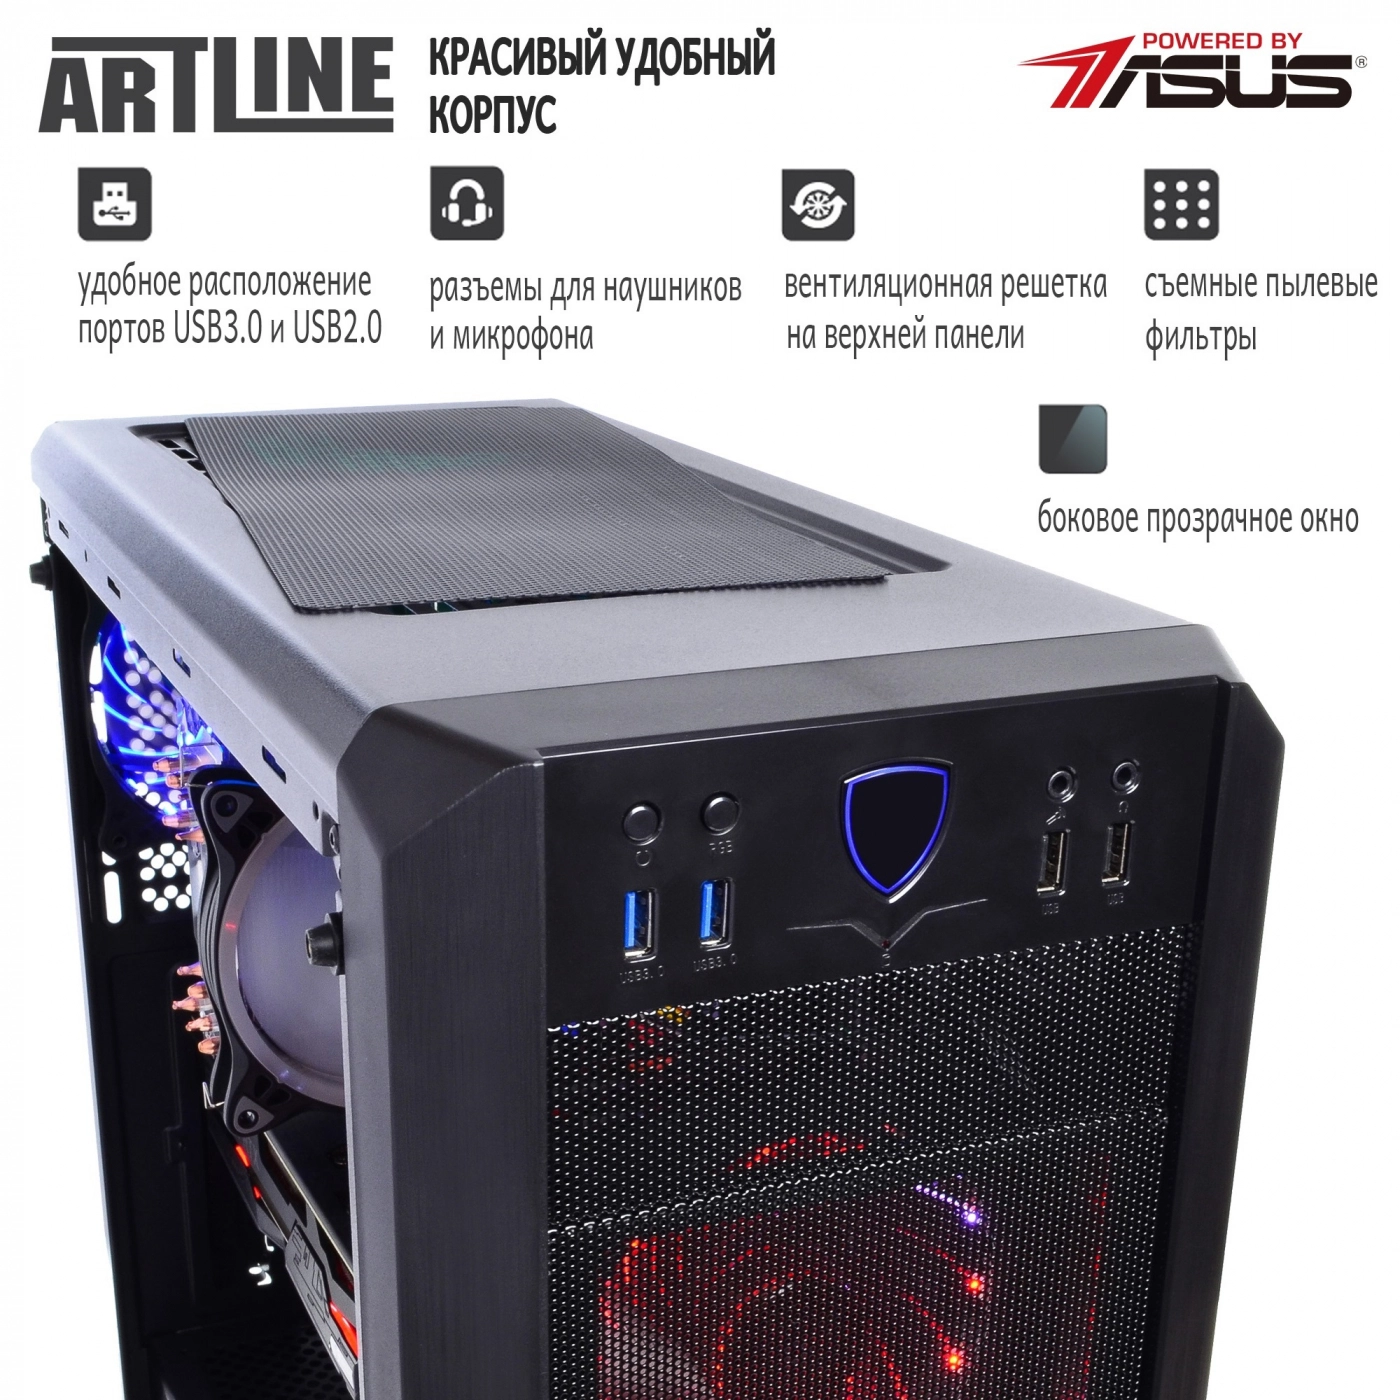 Купить Компьютер ARTLINE Gaming X99v20 - фото 3